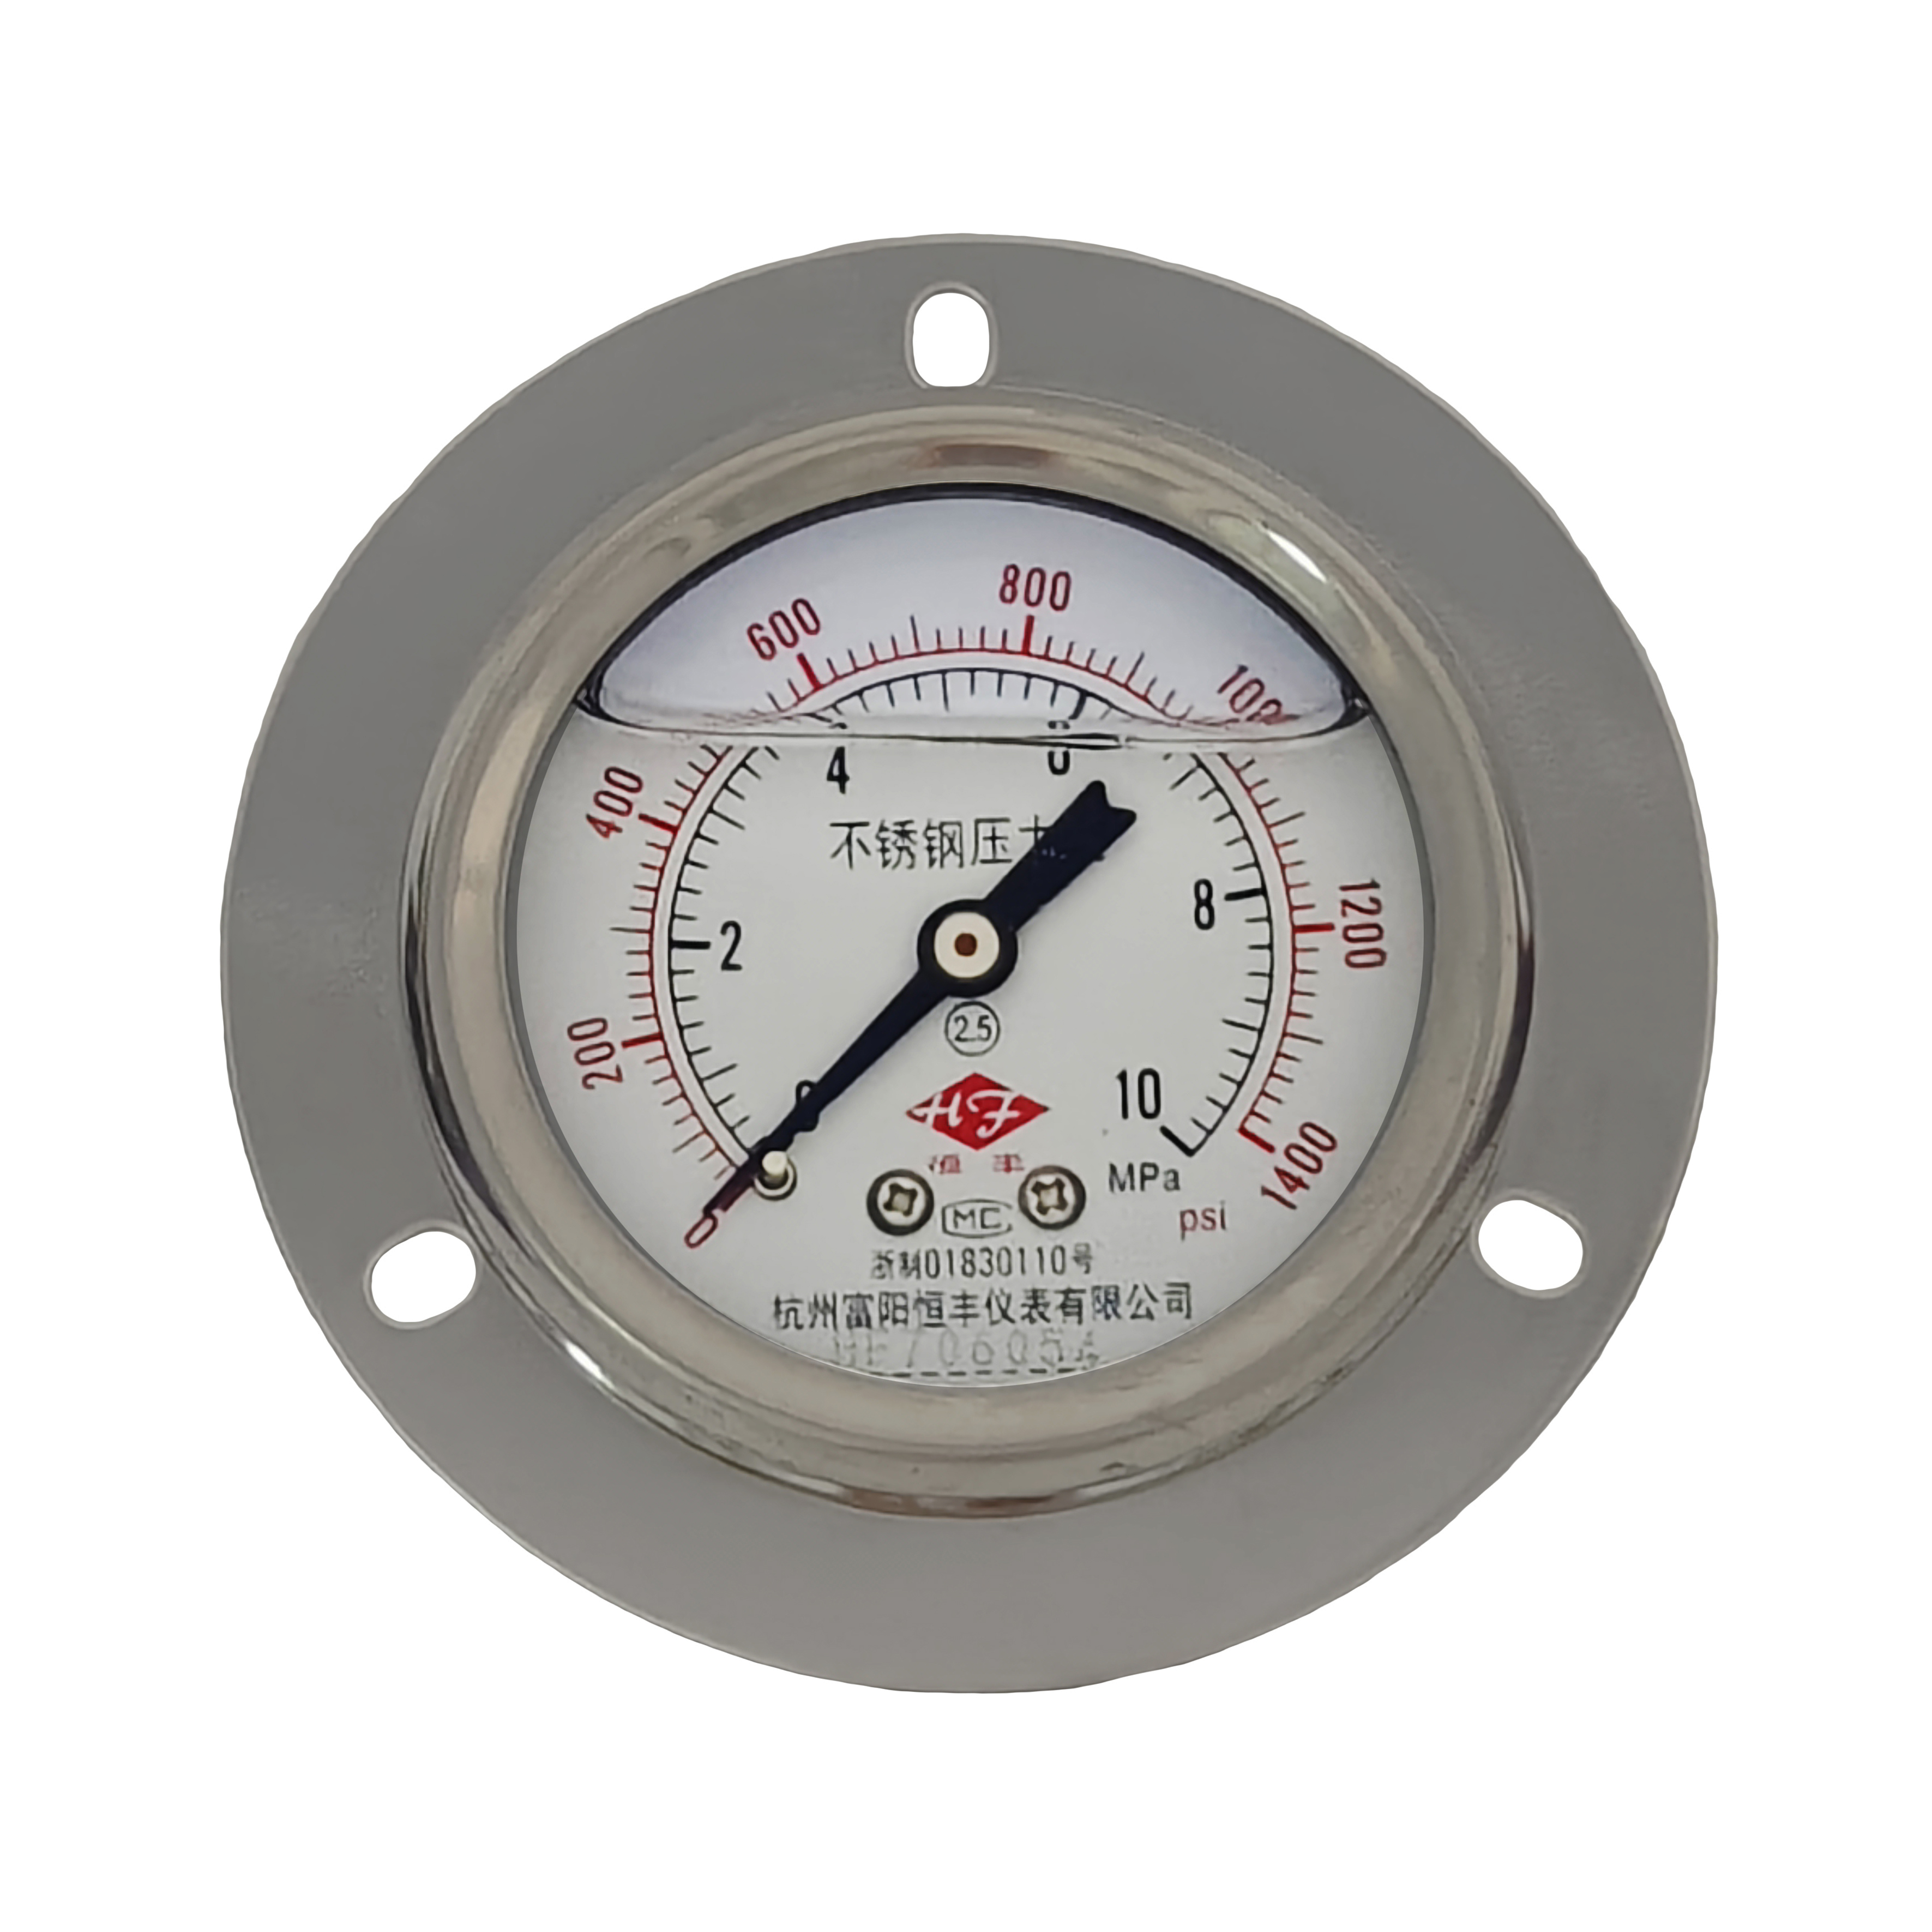 Y60BFZT stainless steel pressure gauge